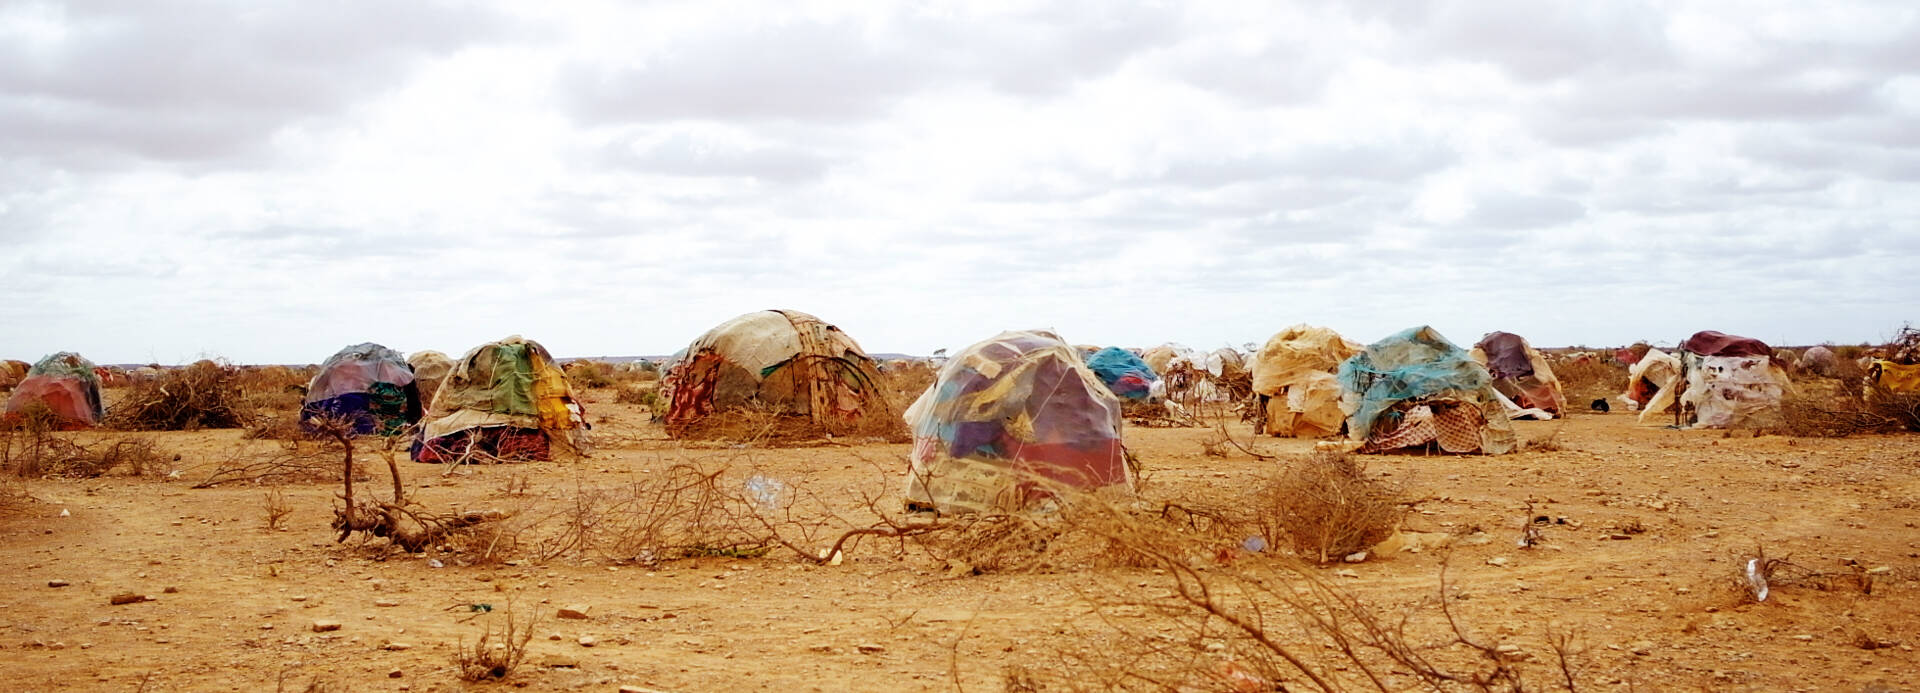 Eine Siedlung inmitten der kargen Landschaft Somalias